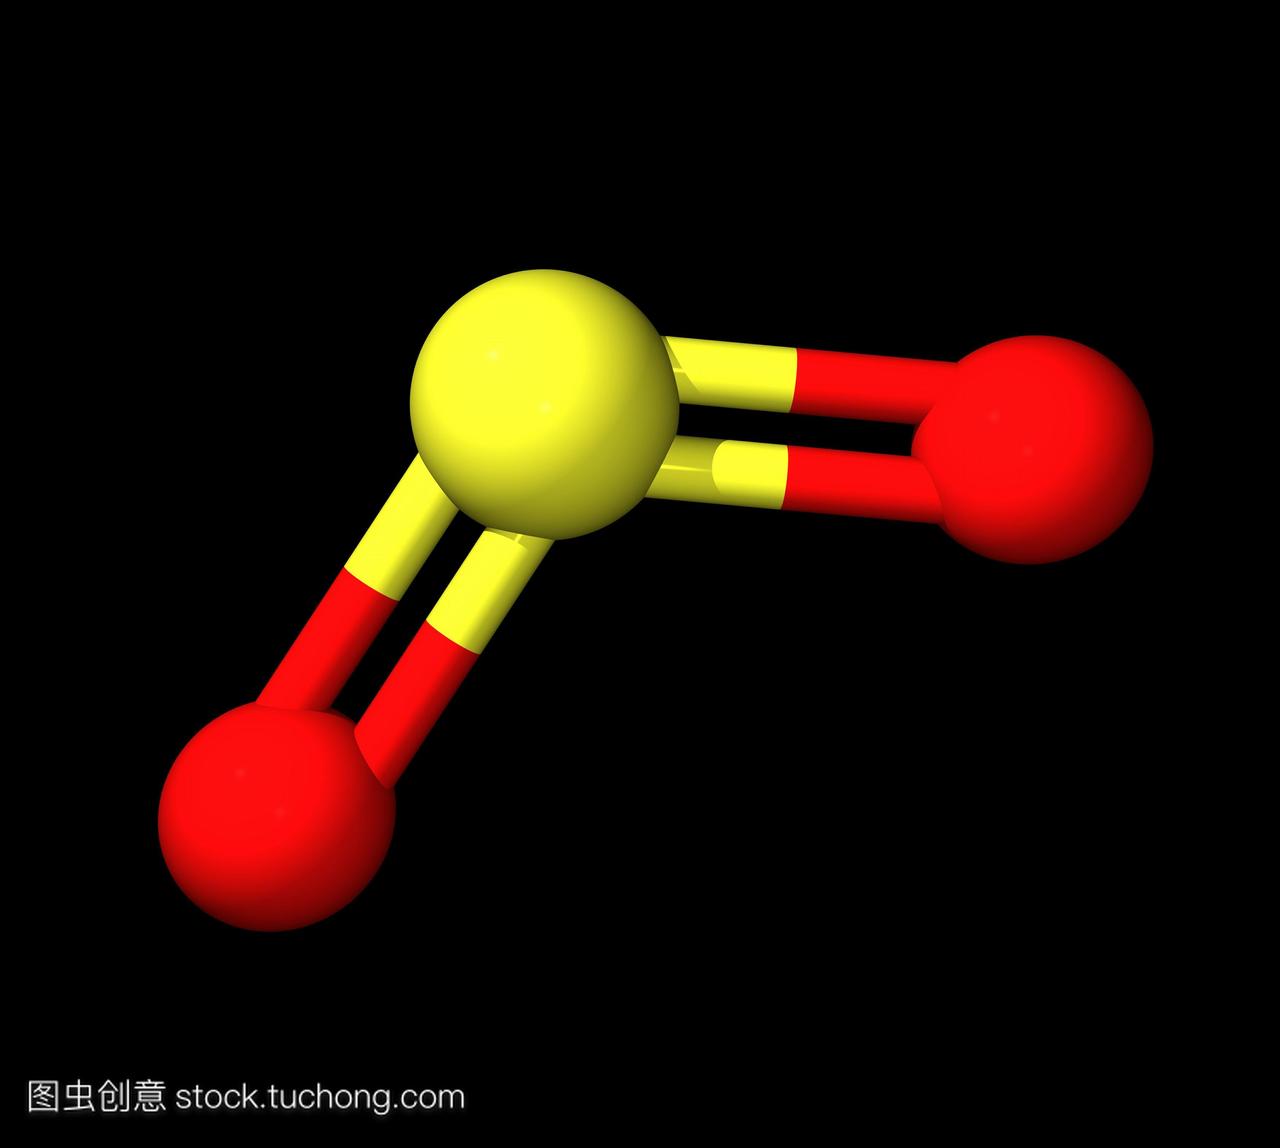 二氧化硫。二氧化硫分子的计算机模型so2。原